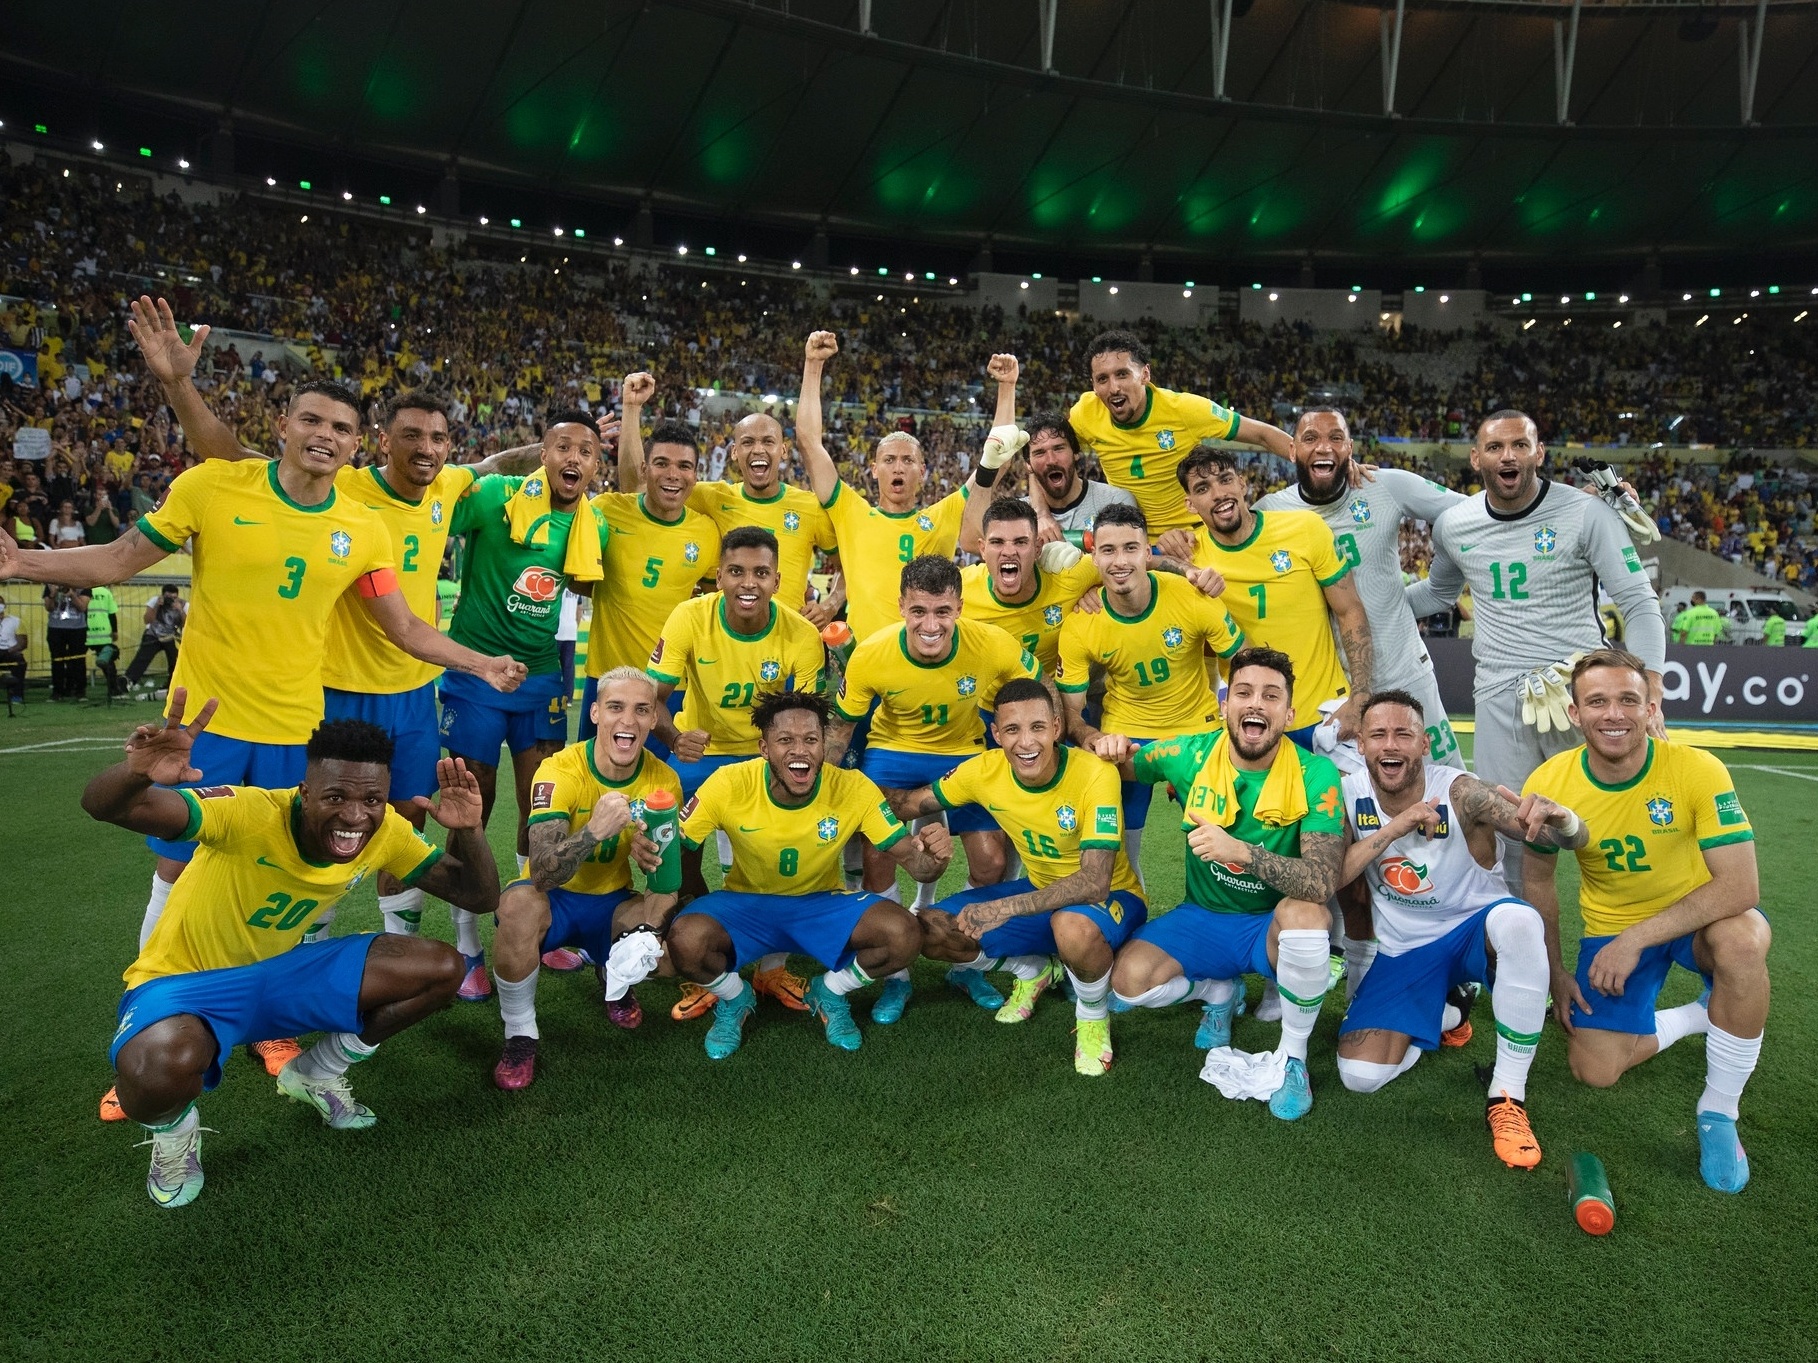 Seleção Brasileira, Últimas notícias, jogos e resultados